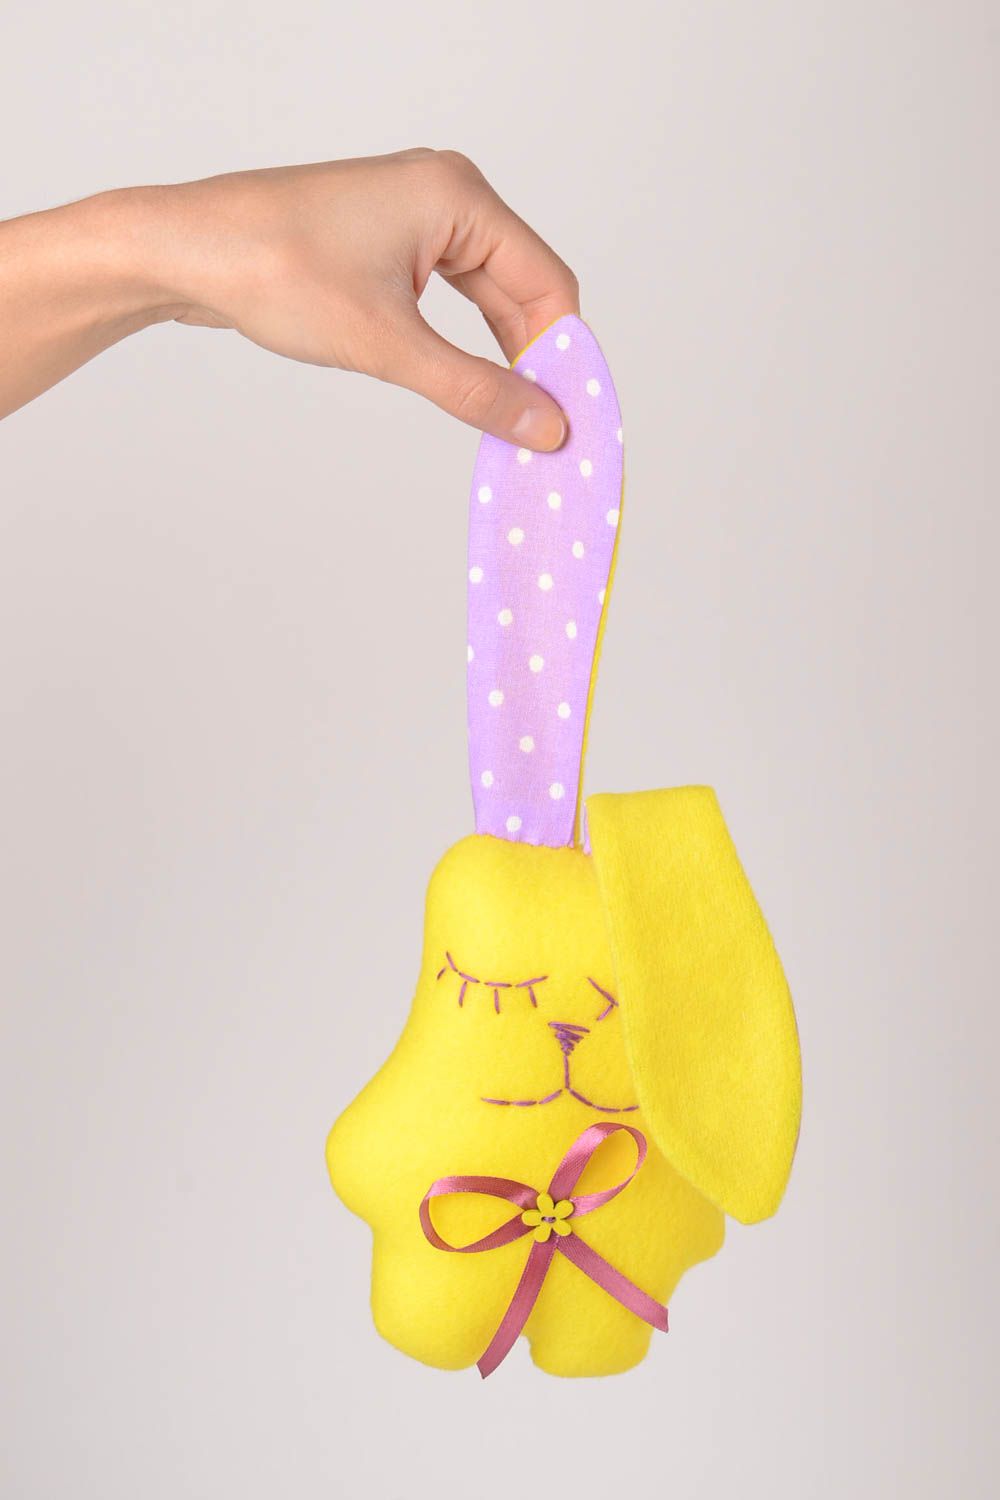 Muñeco de tela juguete artesanal peluche original conejito amarillo bonito foto 2